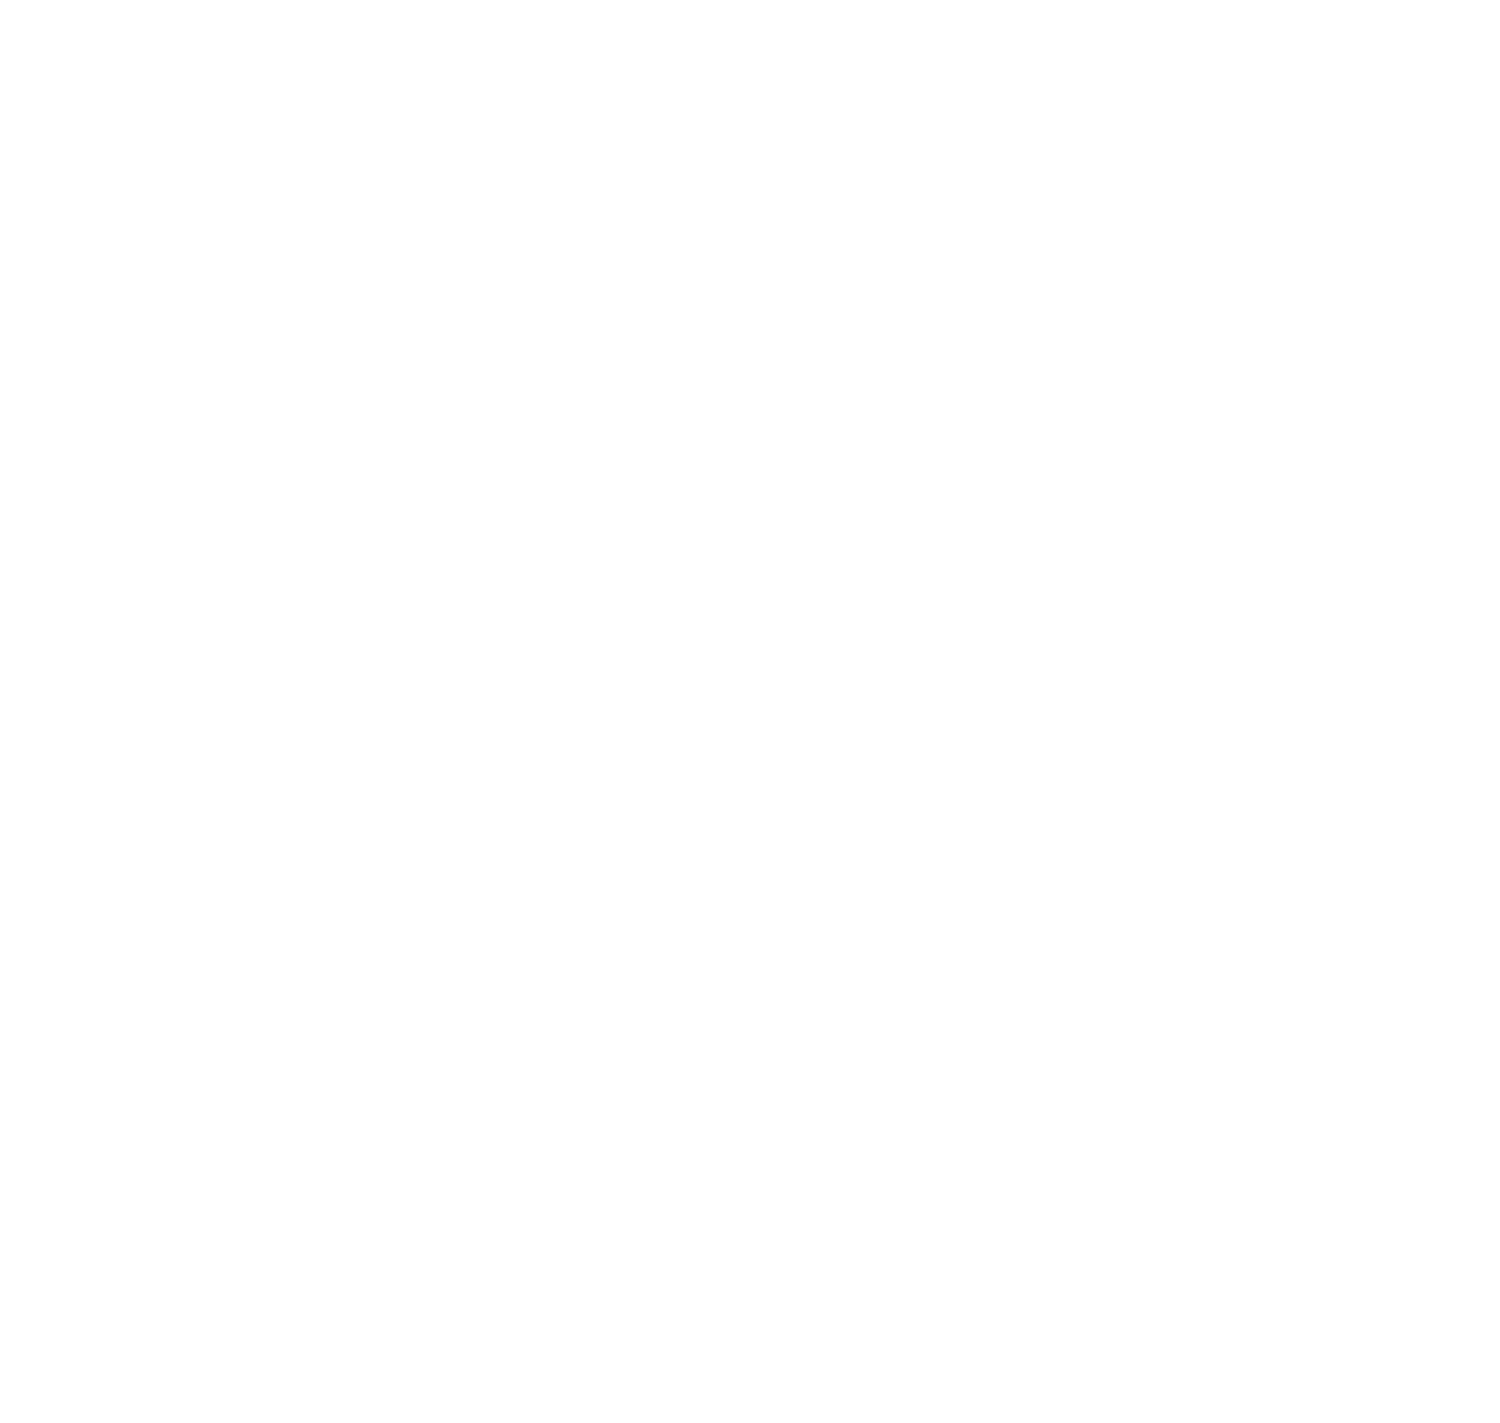 ROSLYN FILMS